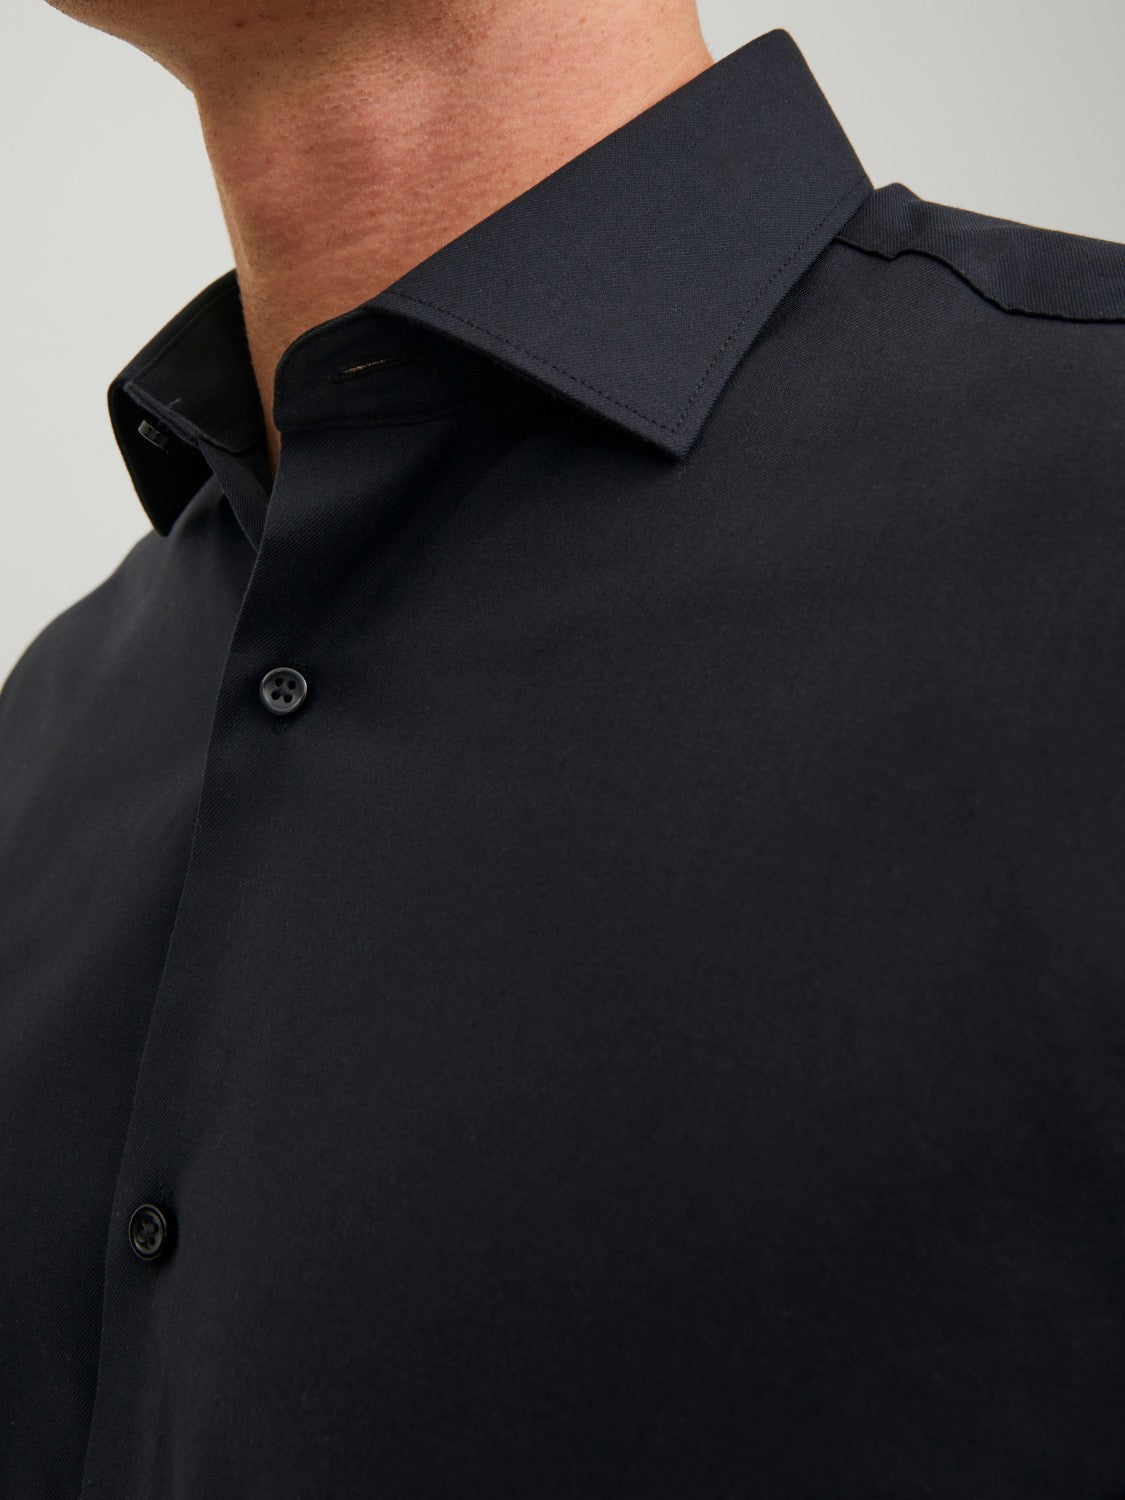 Men's Parker Black Shirt-Buttons & Collar View